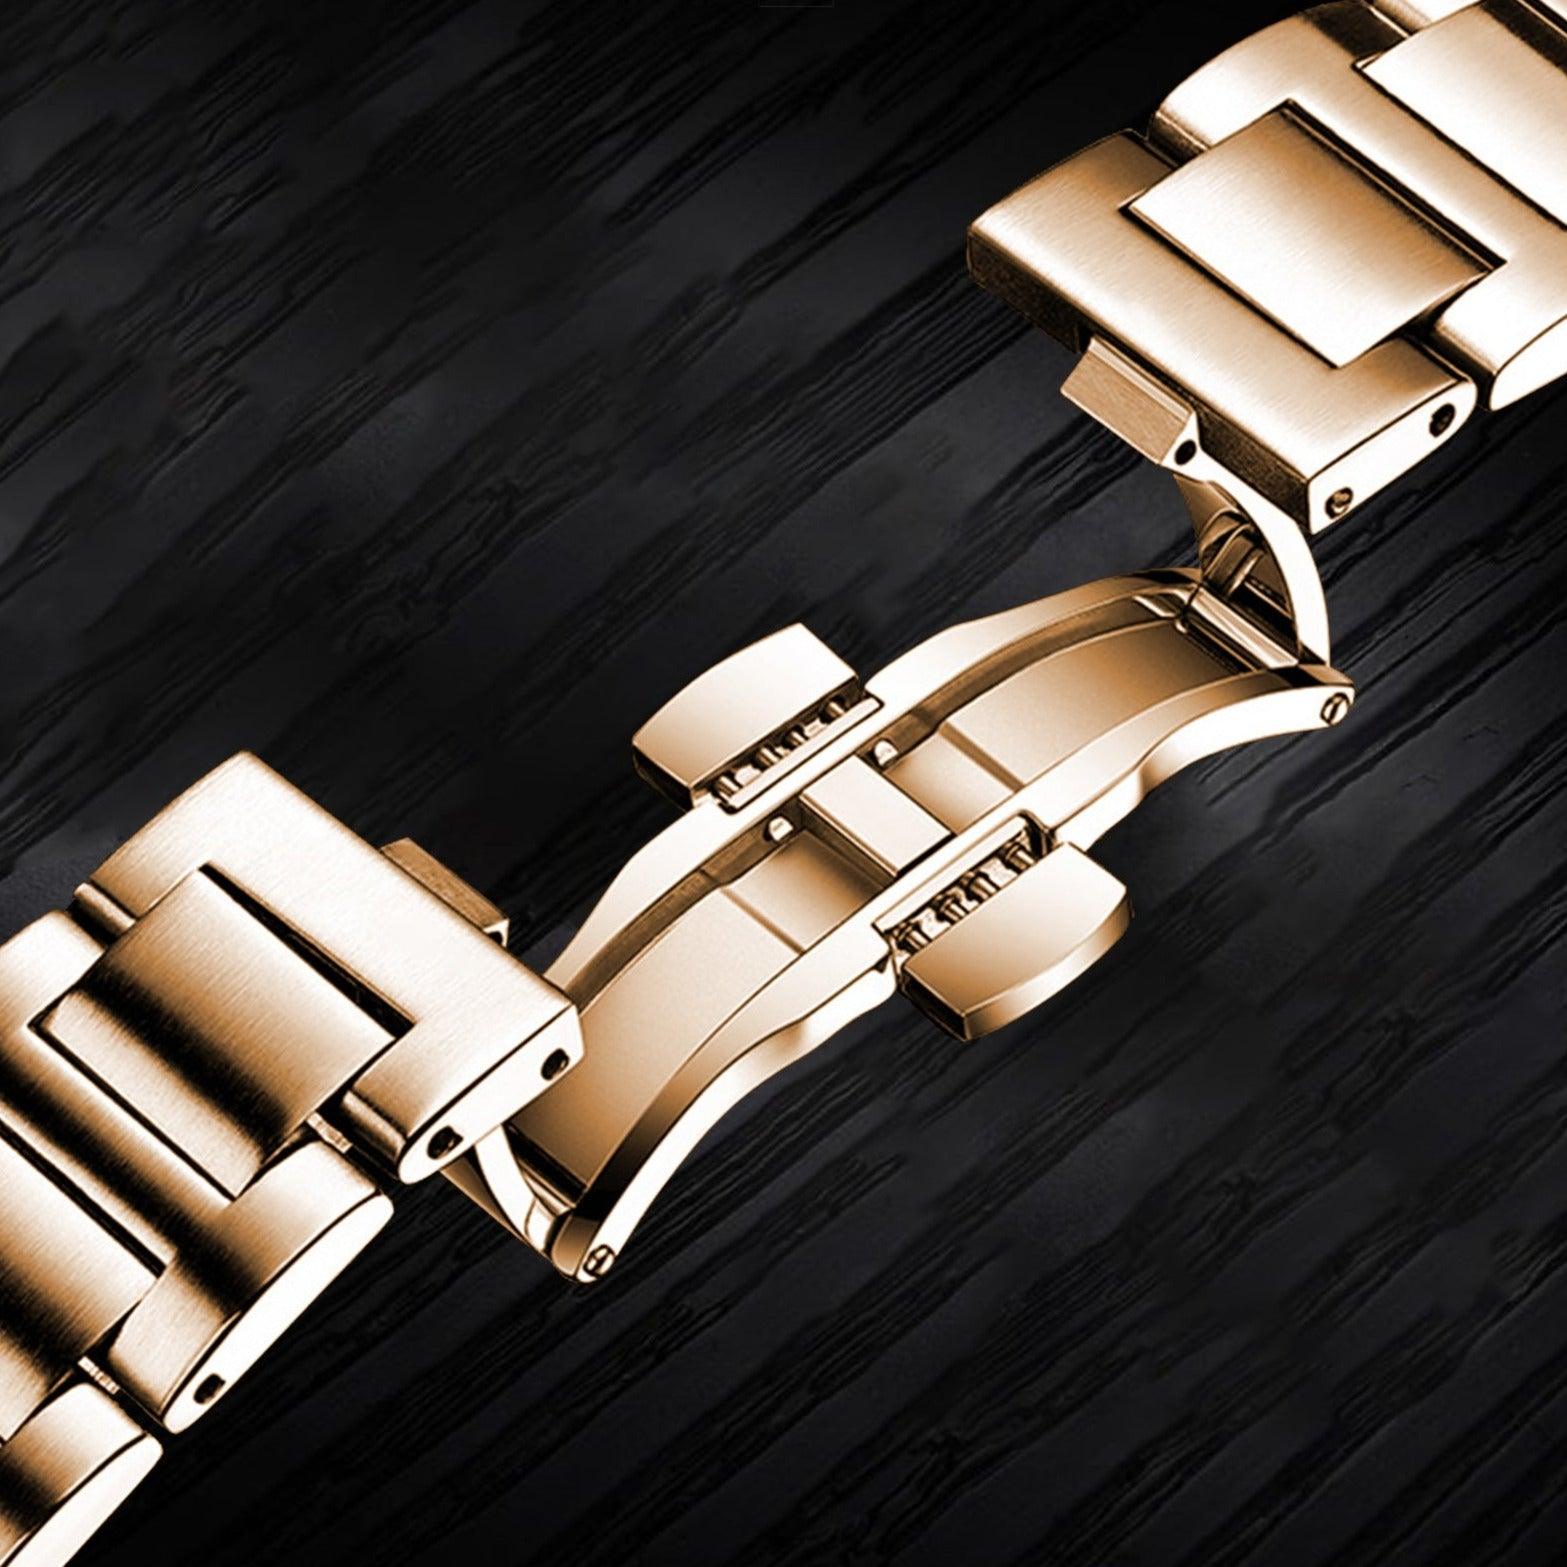 Relógio Lablue A7 - Alfa Wear - relógio, relógio de couro, relógio de metal, relógio esportivo, relógio masculino